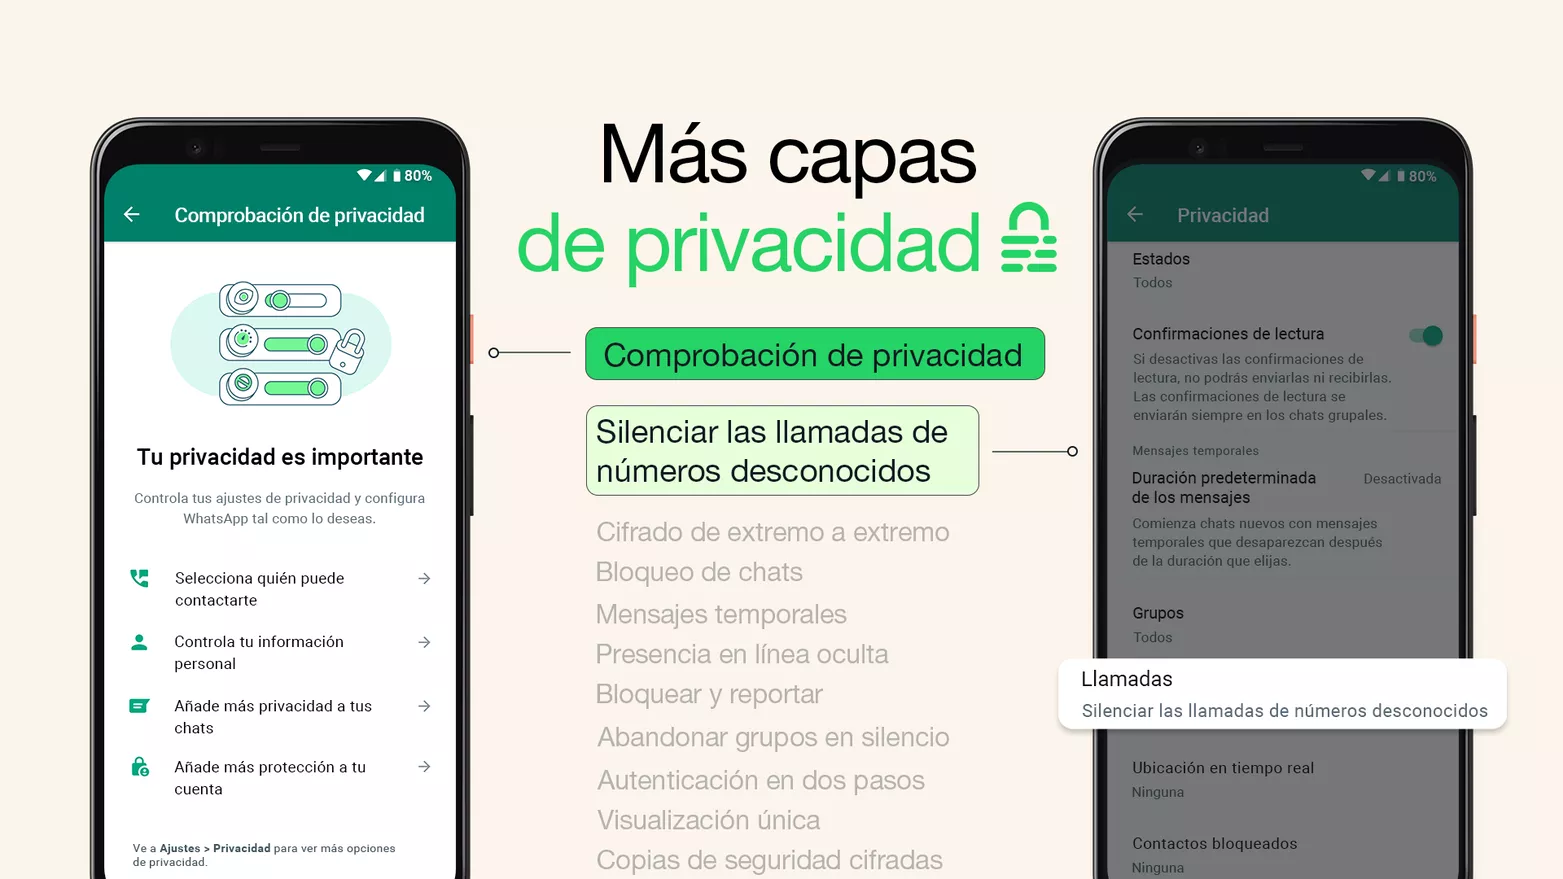 WhatsApp demuestra su compromiso con la privacidad gracias a esta nueva actualización